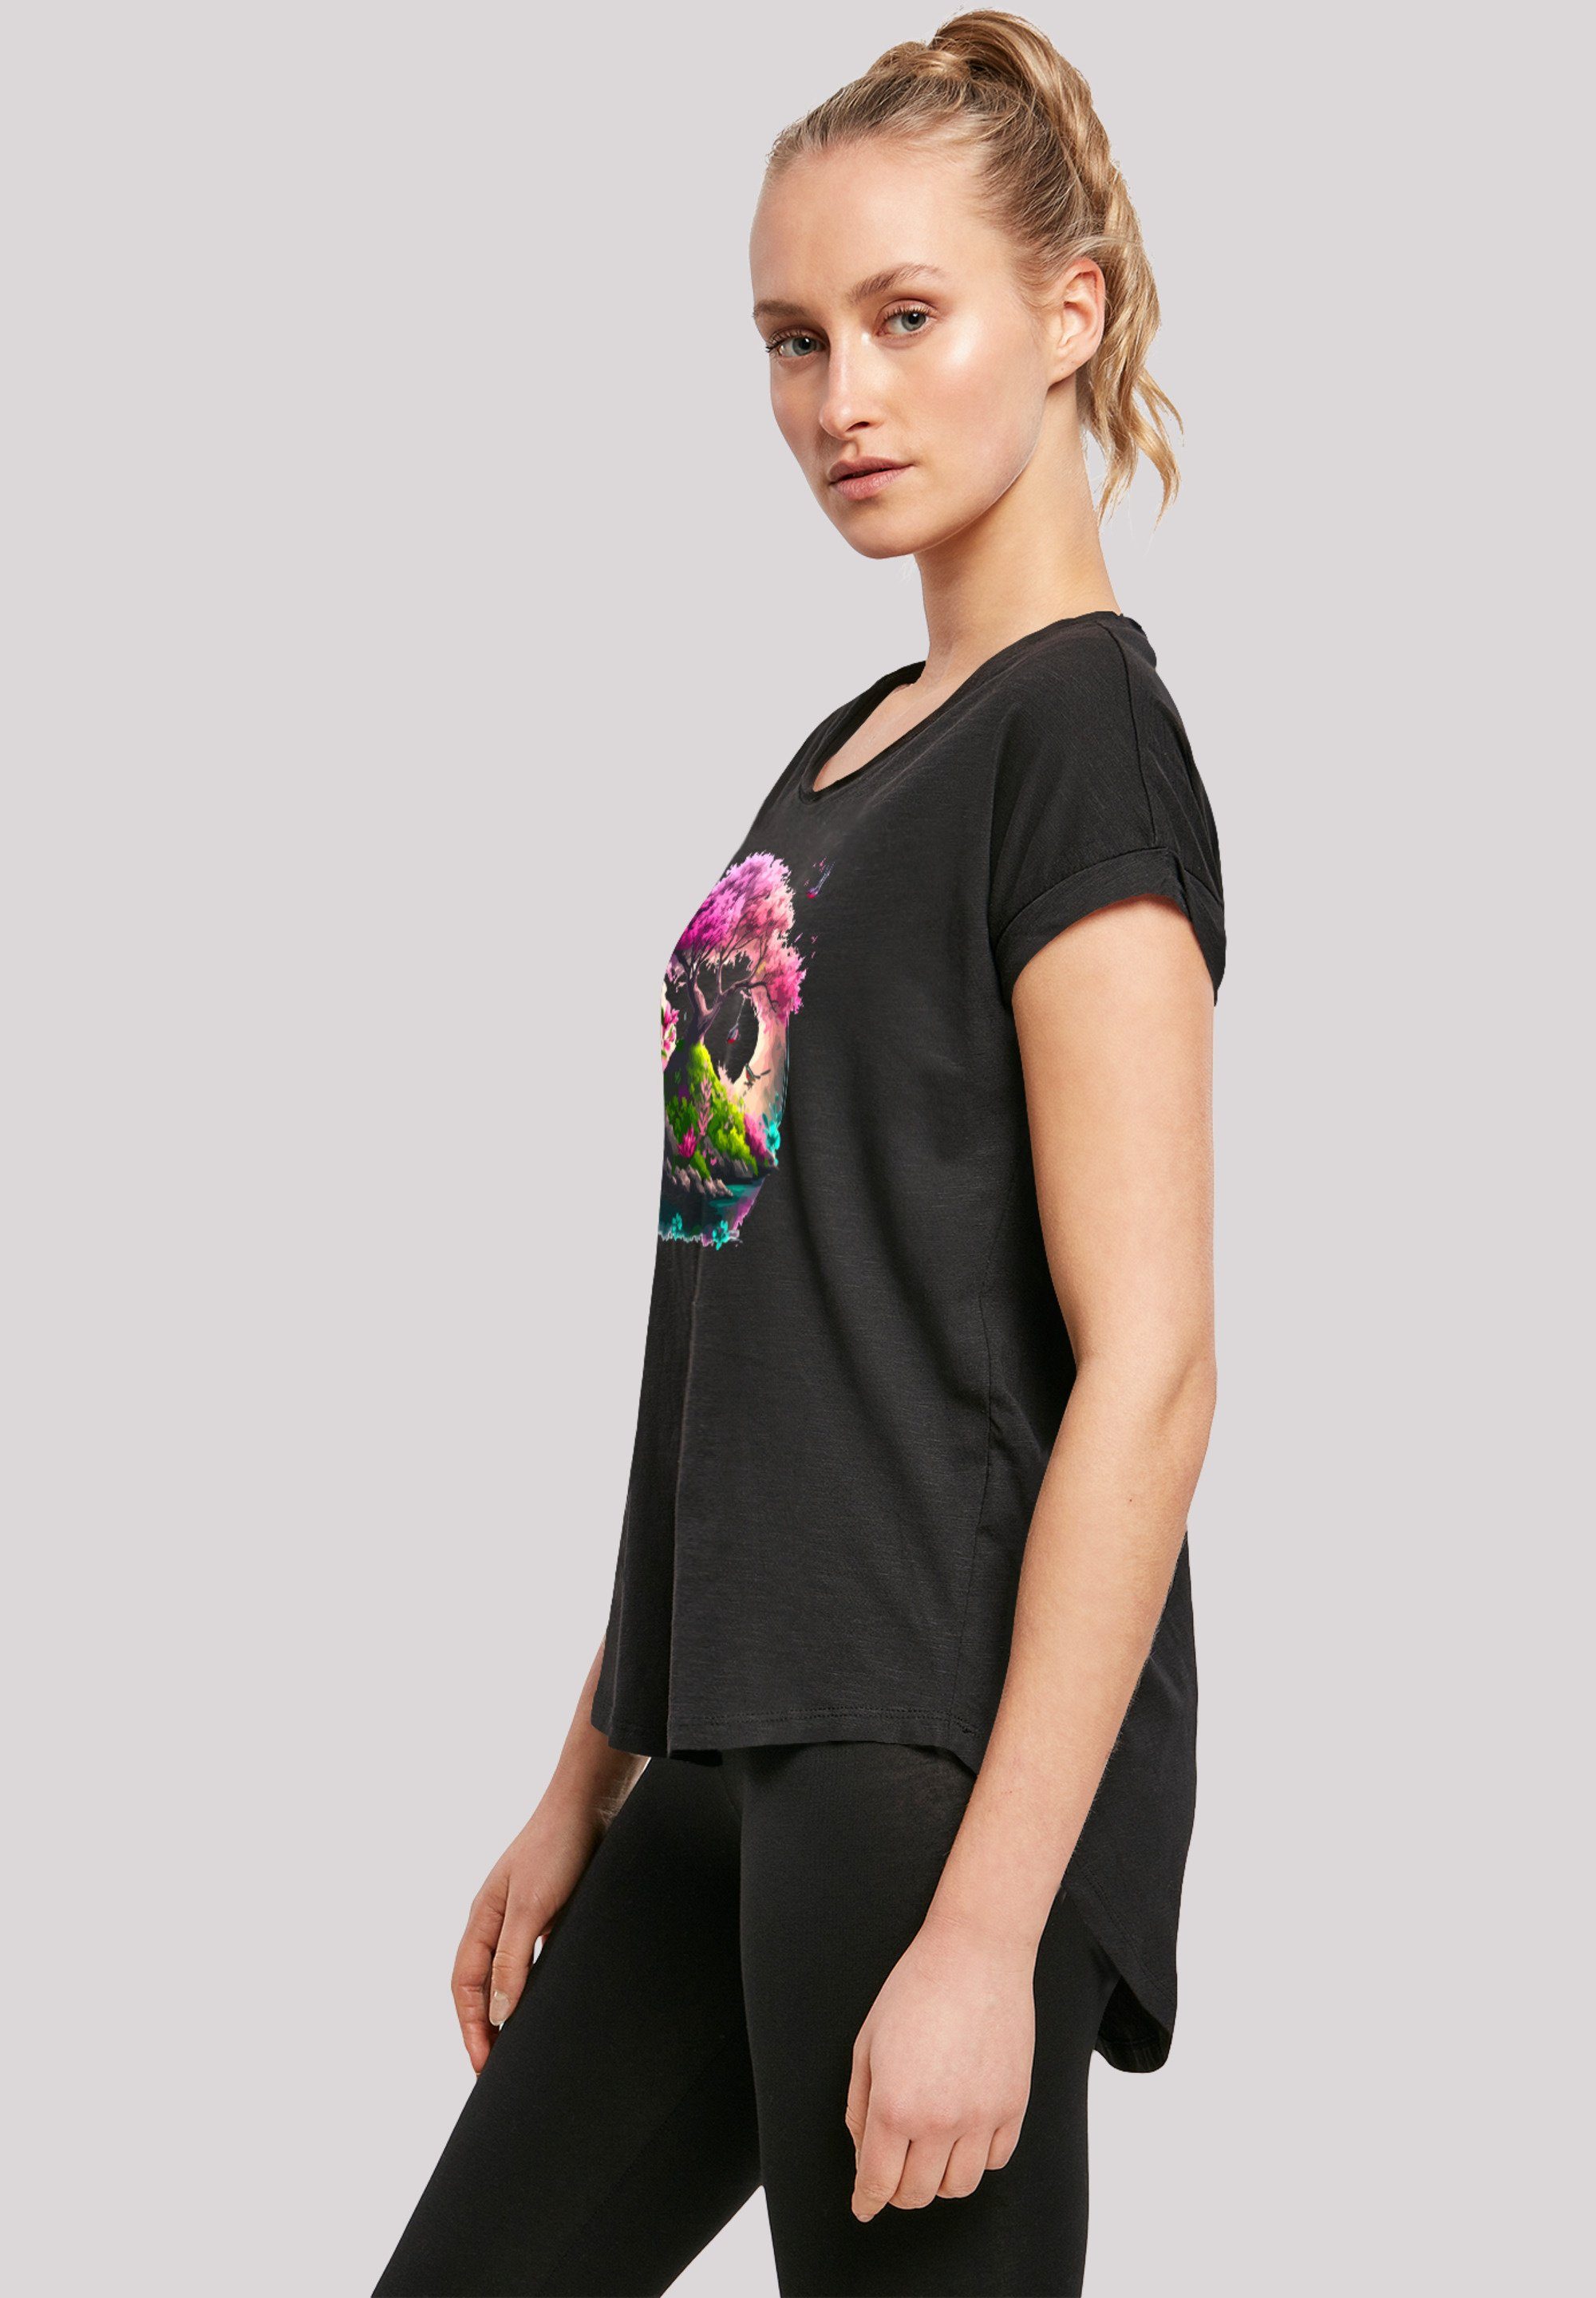 Baum Kirschblüten T-Shirt F4NT4STIC Print schwarz